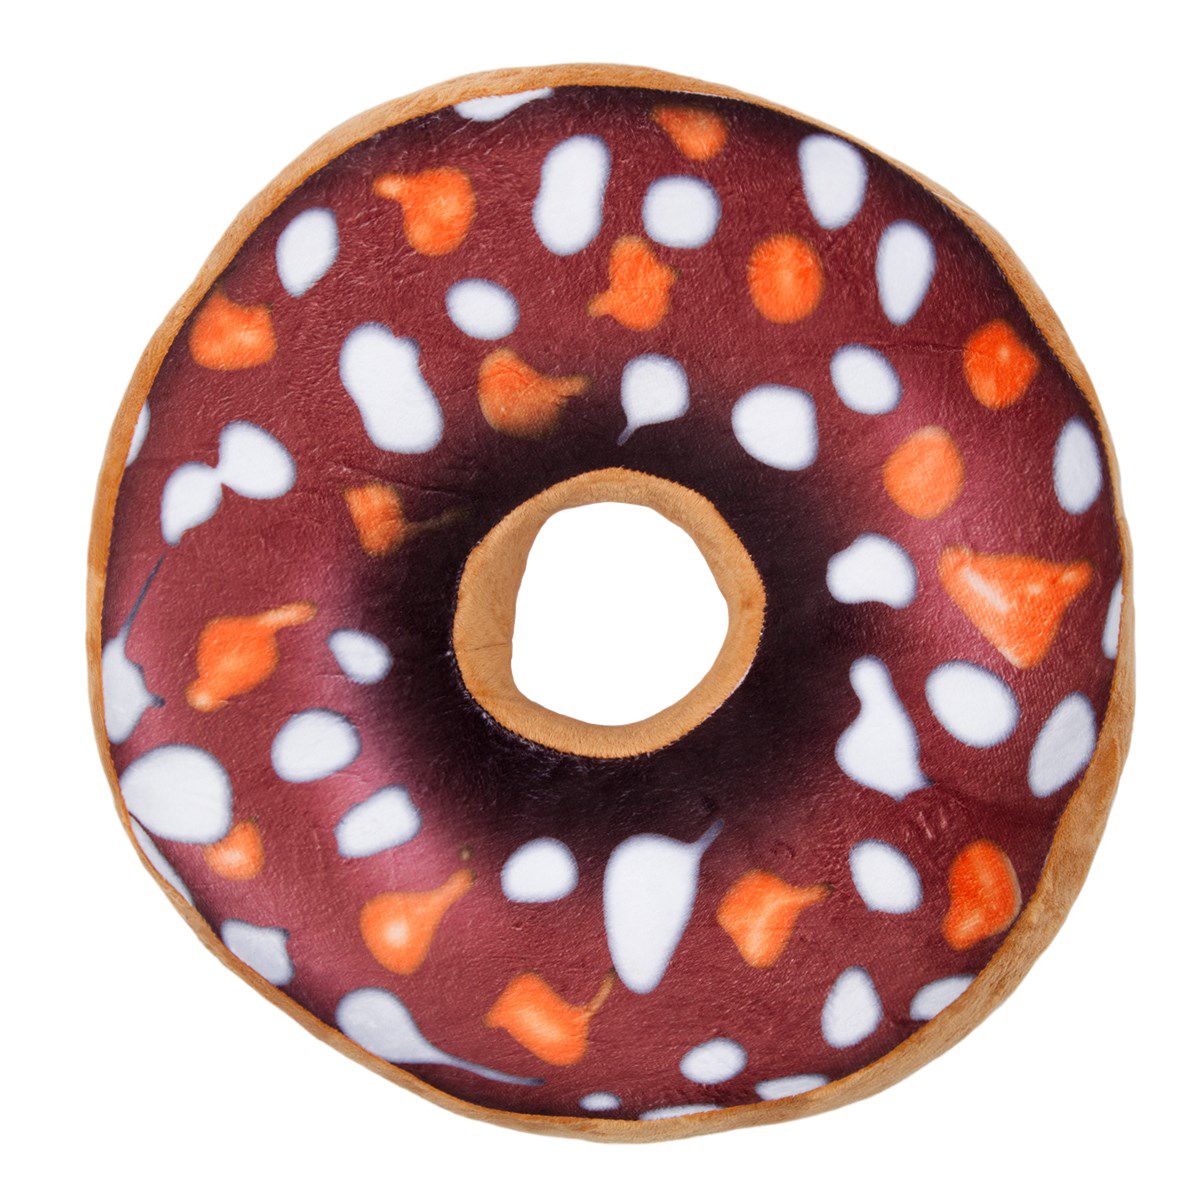 Jahu Tvarovaný polštářek Donut hnědá, 38 cm - 4home.cz